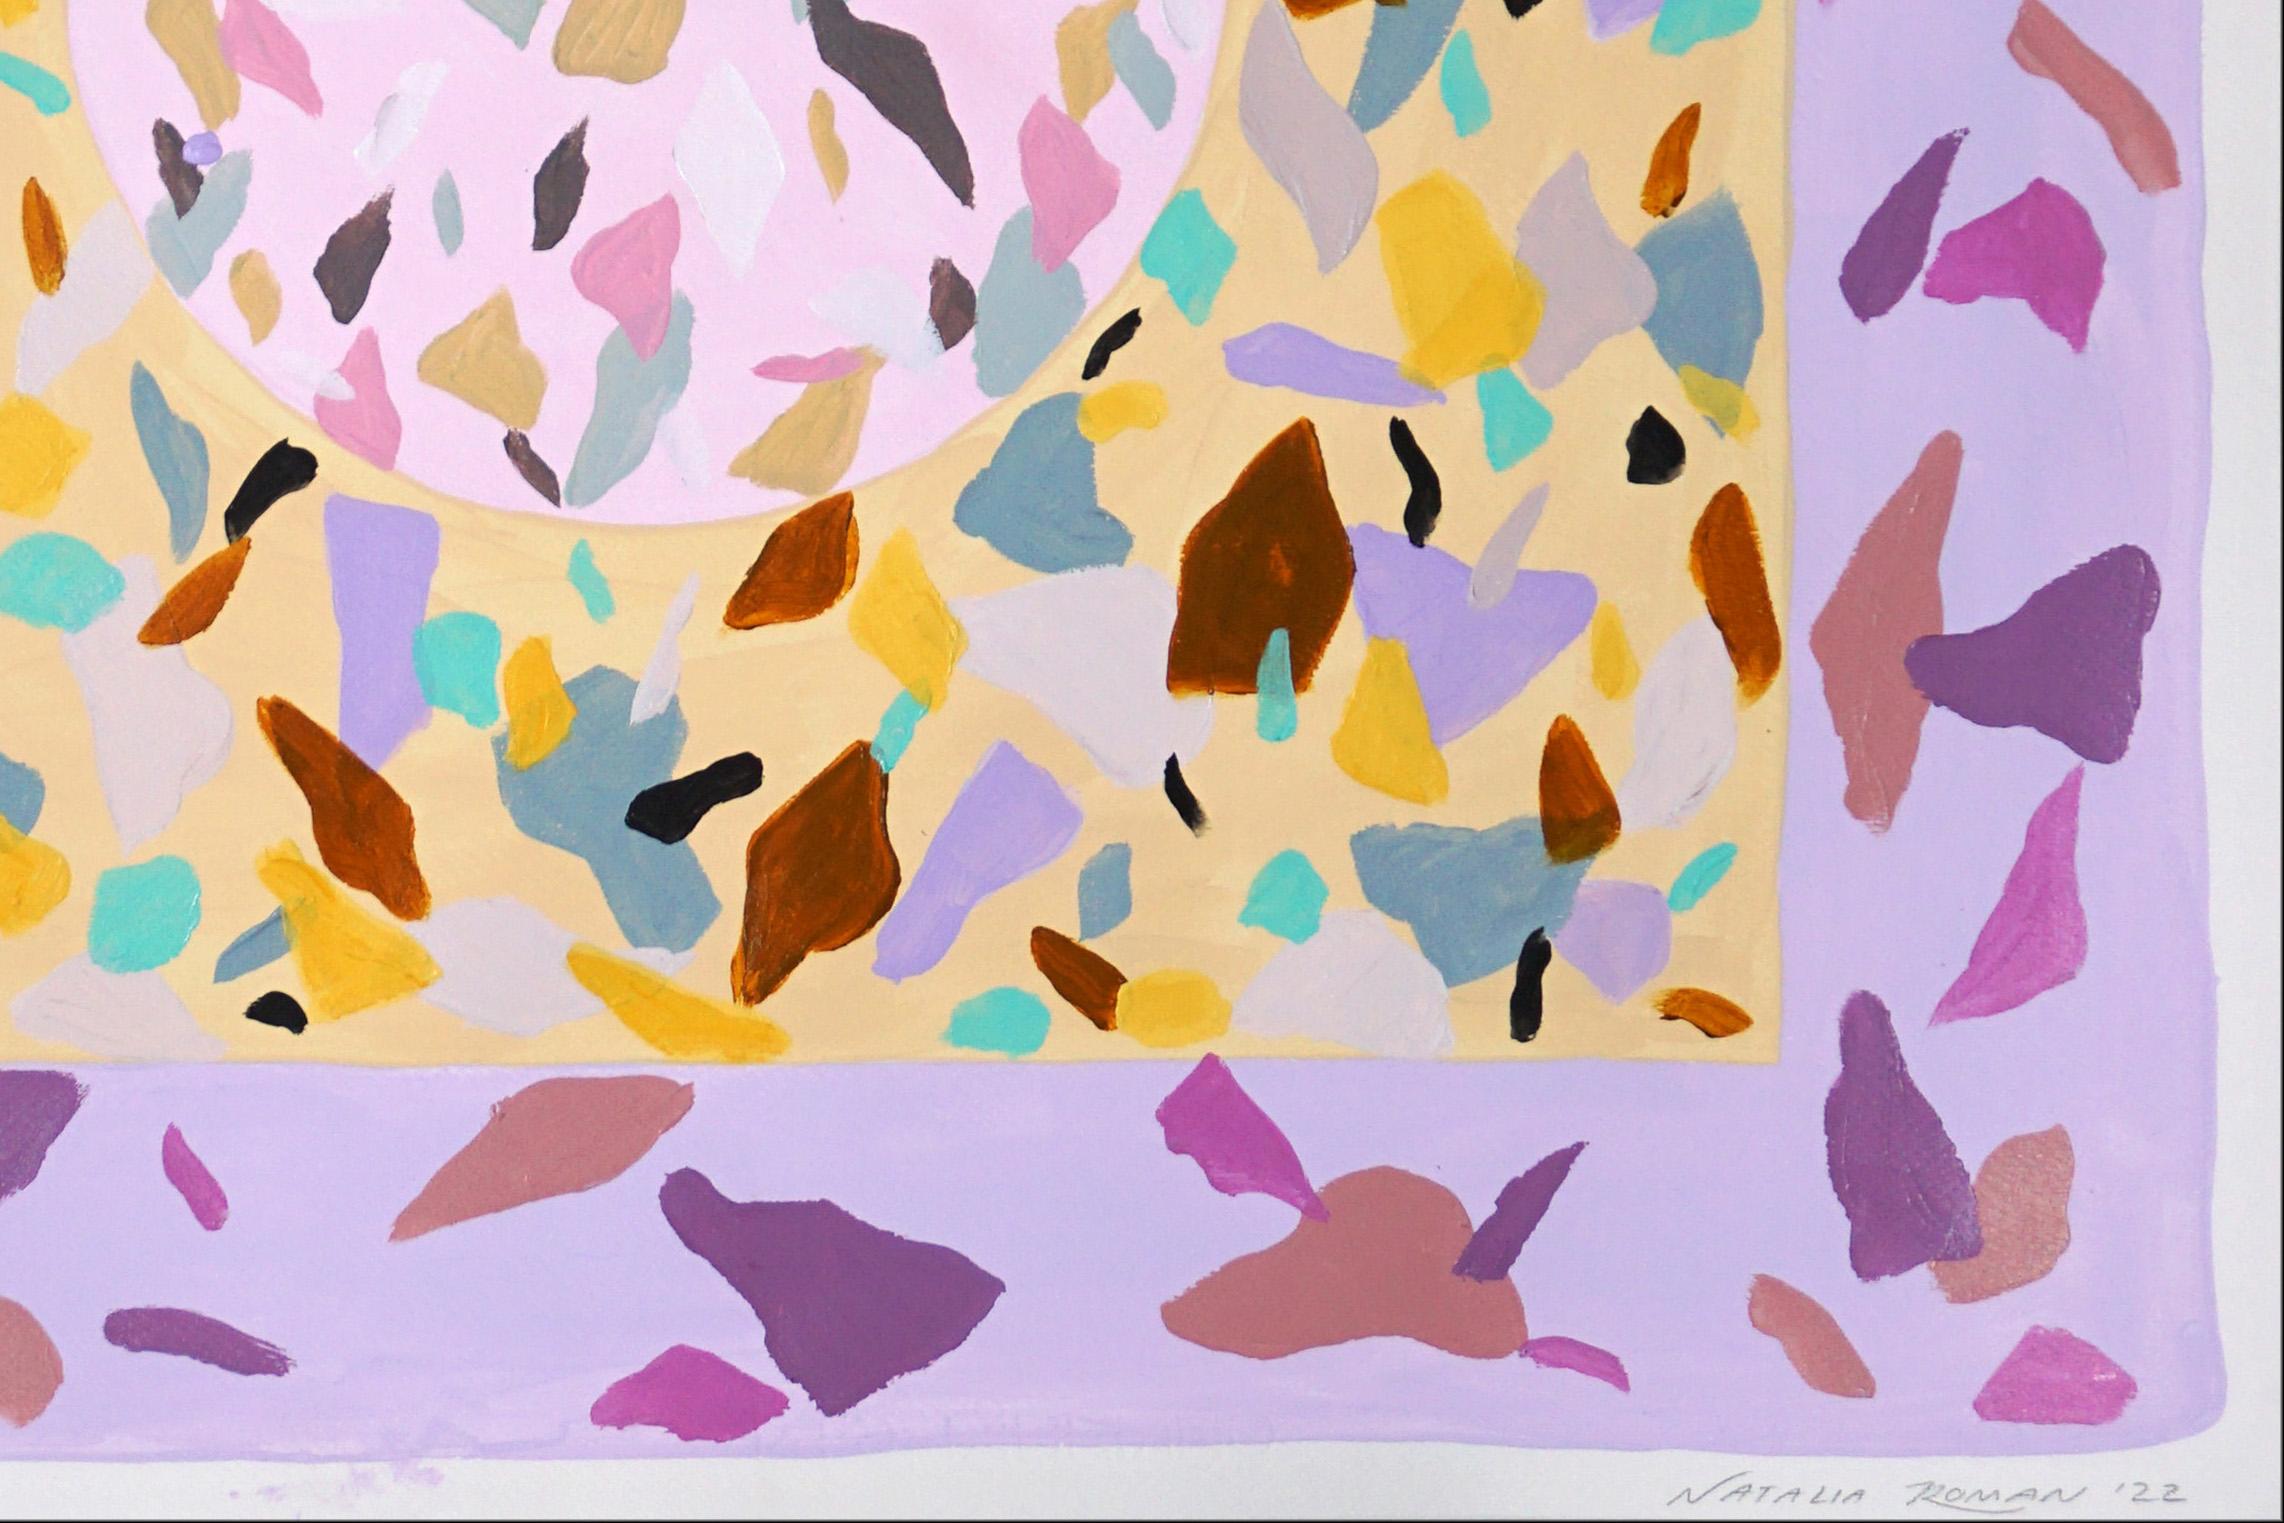 Diese Serie handbemalter Acrylgemälde von Natalia Roman ist von den Farben und Texturen der italienischen Terrazzo-Fliesenmalerei inspiriert. Die entstandenen Muster kombinieren eine Vielzahl lebendiger Farben im Vordergrund mit subtilen